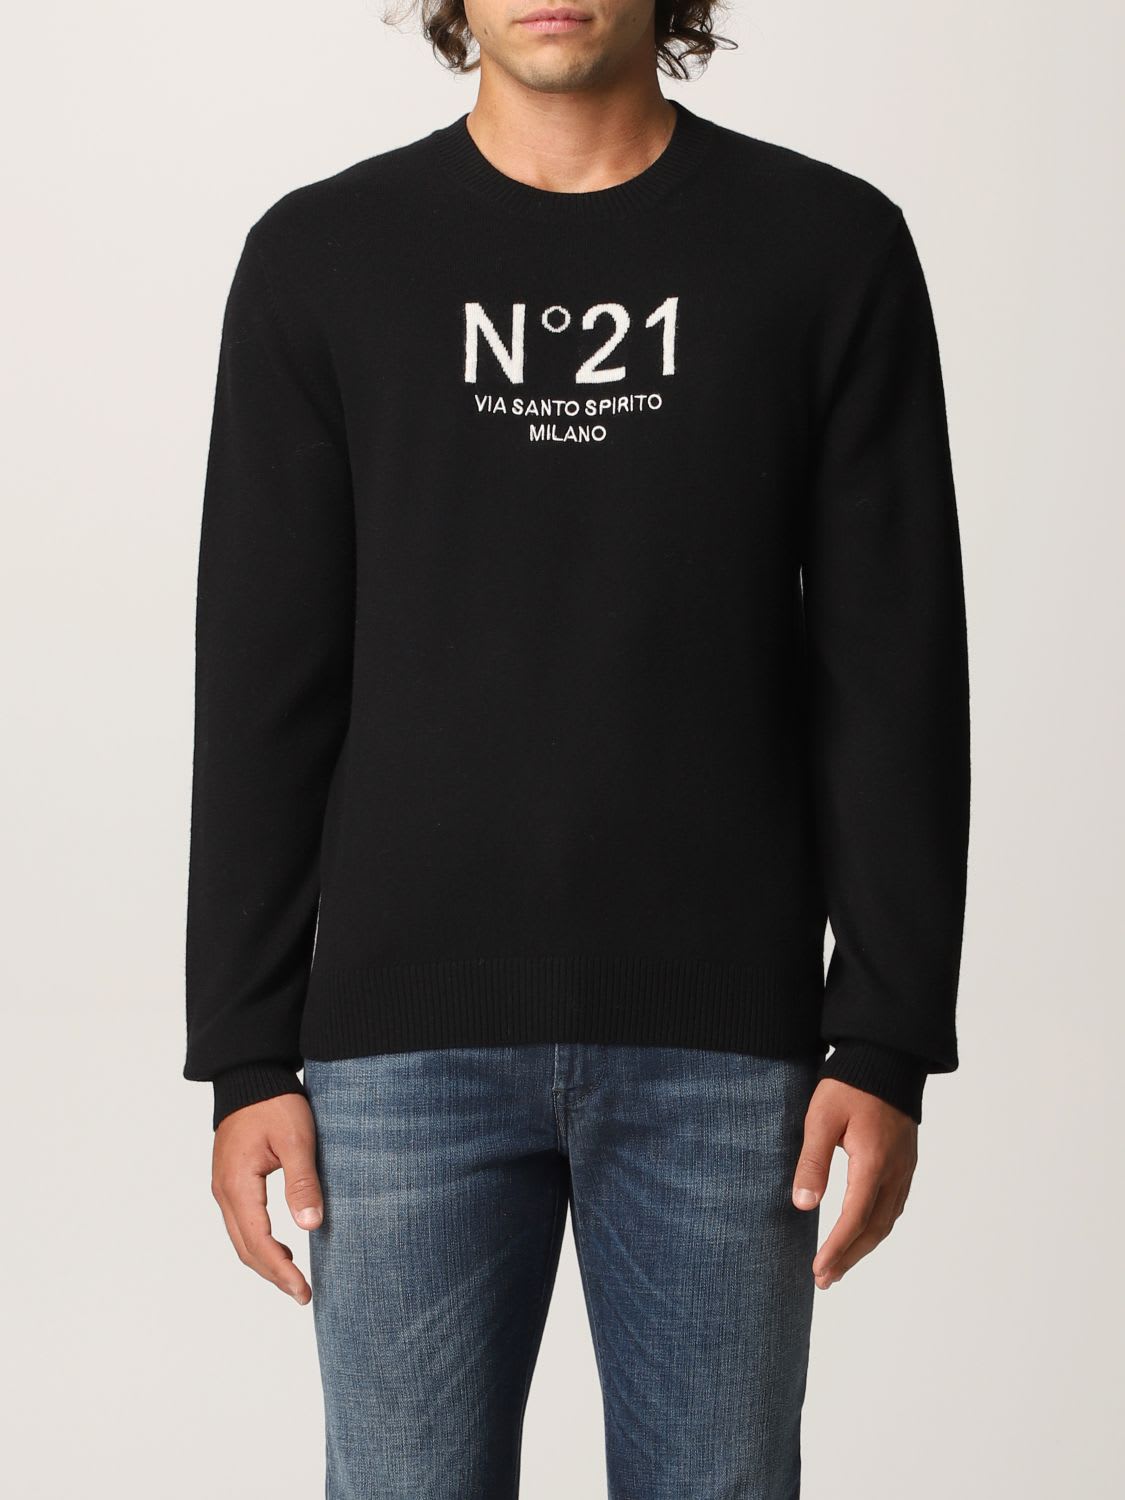 N.21 N° 21 Sweater Sweater Men N° 21